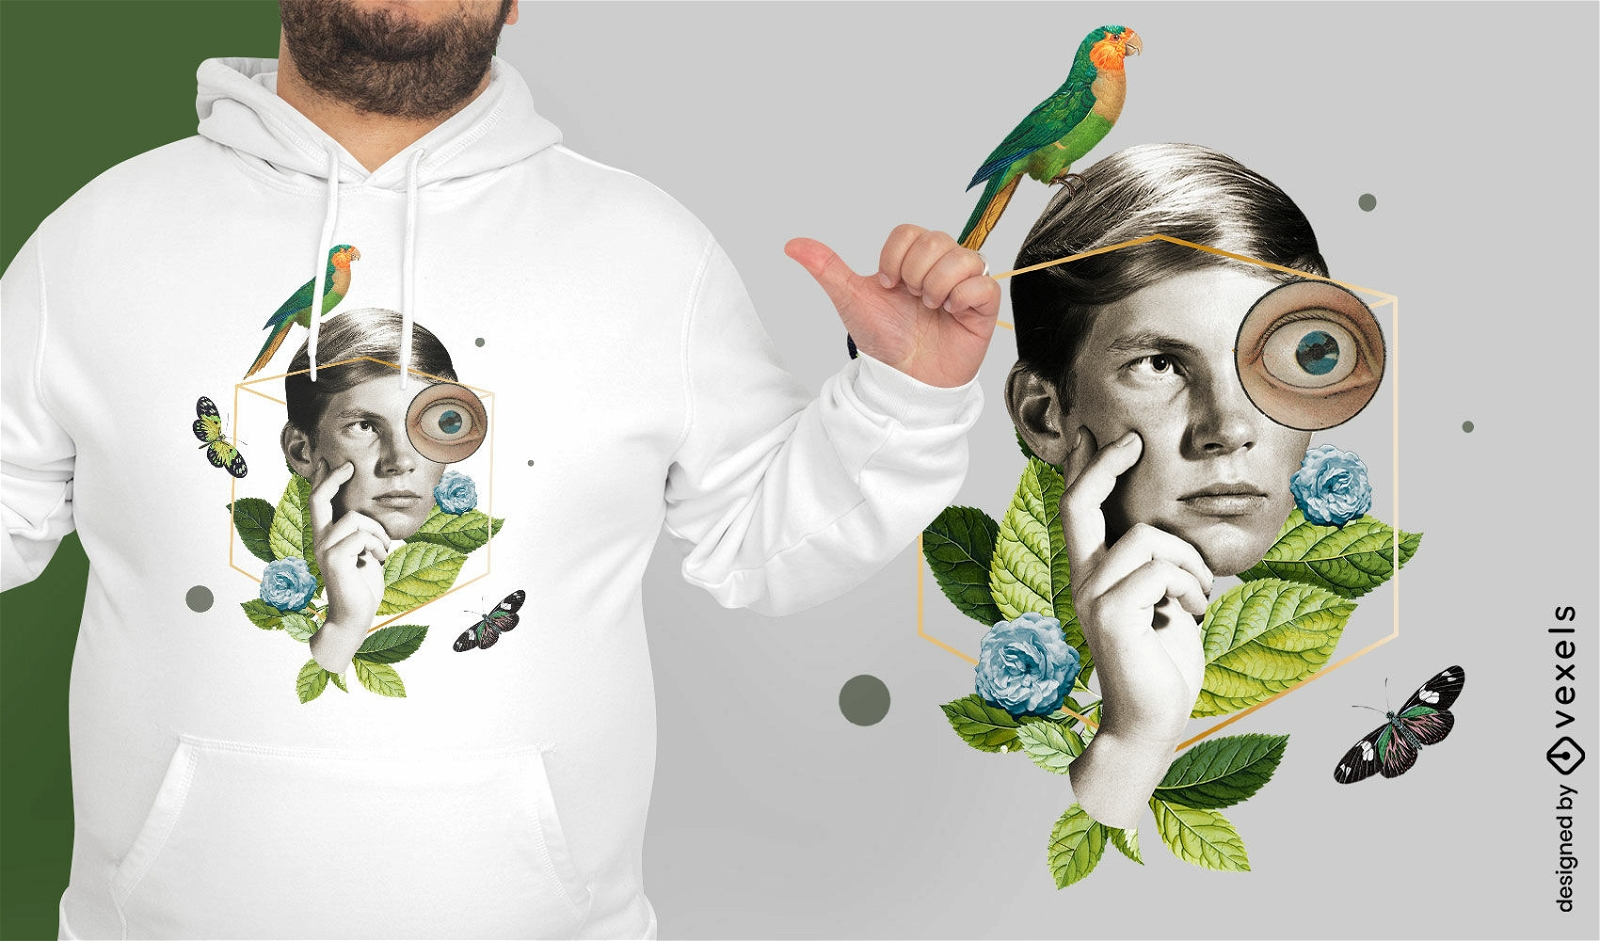 Kind im absurden Natur-T-Shirt-Design